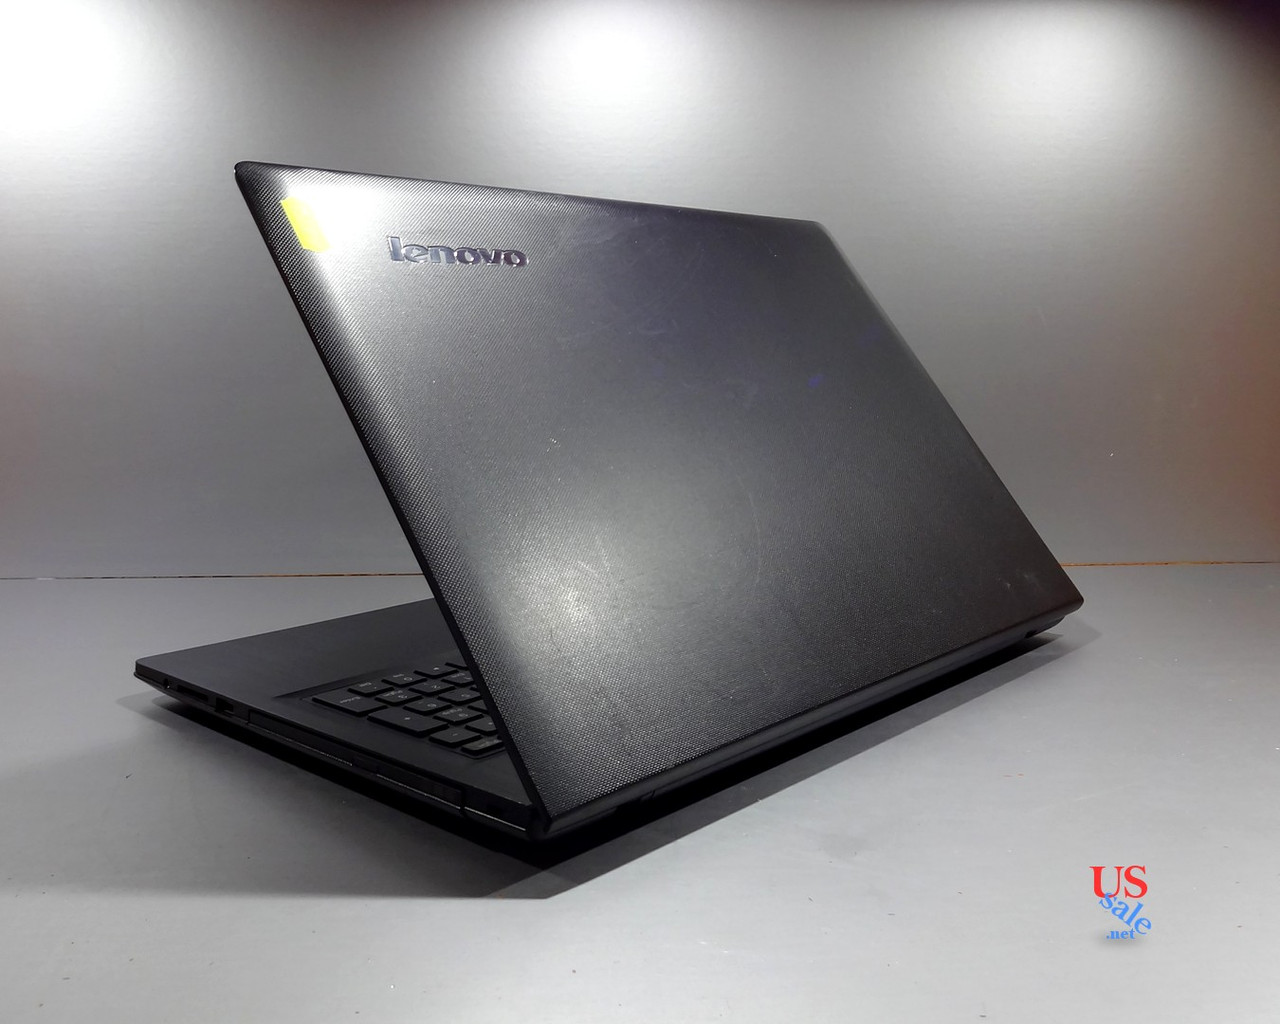 Ноутбук Lenovo G50-80 15.6″, Intel Core i3-4030u 1.9 Ghz, 4Gb DDR3, 256Gb SSD. Гарантия!